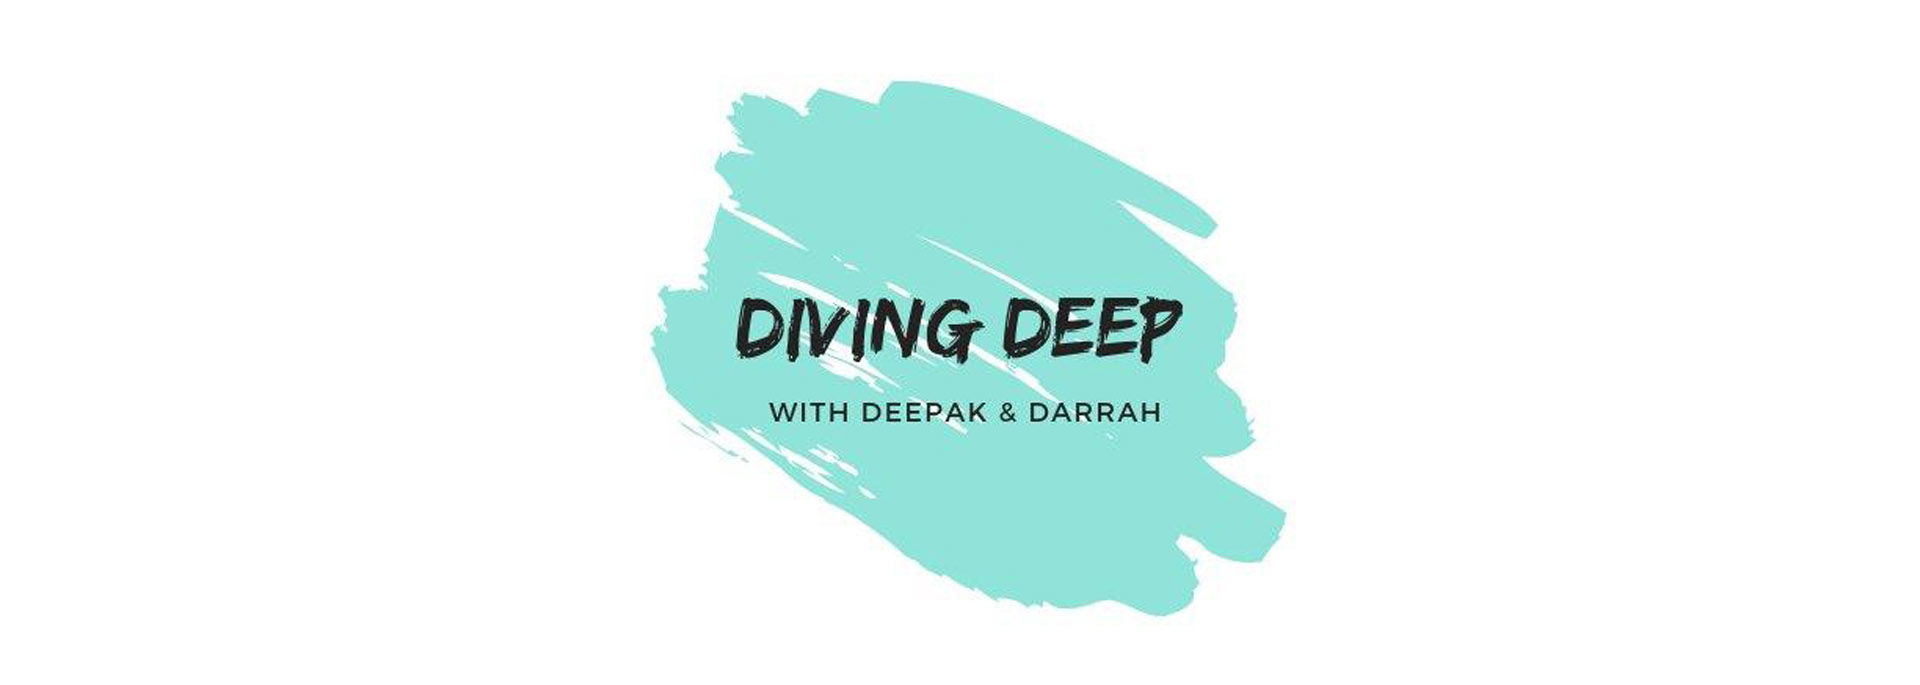 Diving Deep with Deepak & Darrah channel